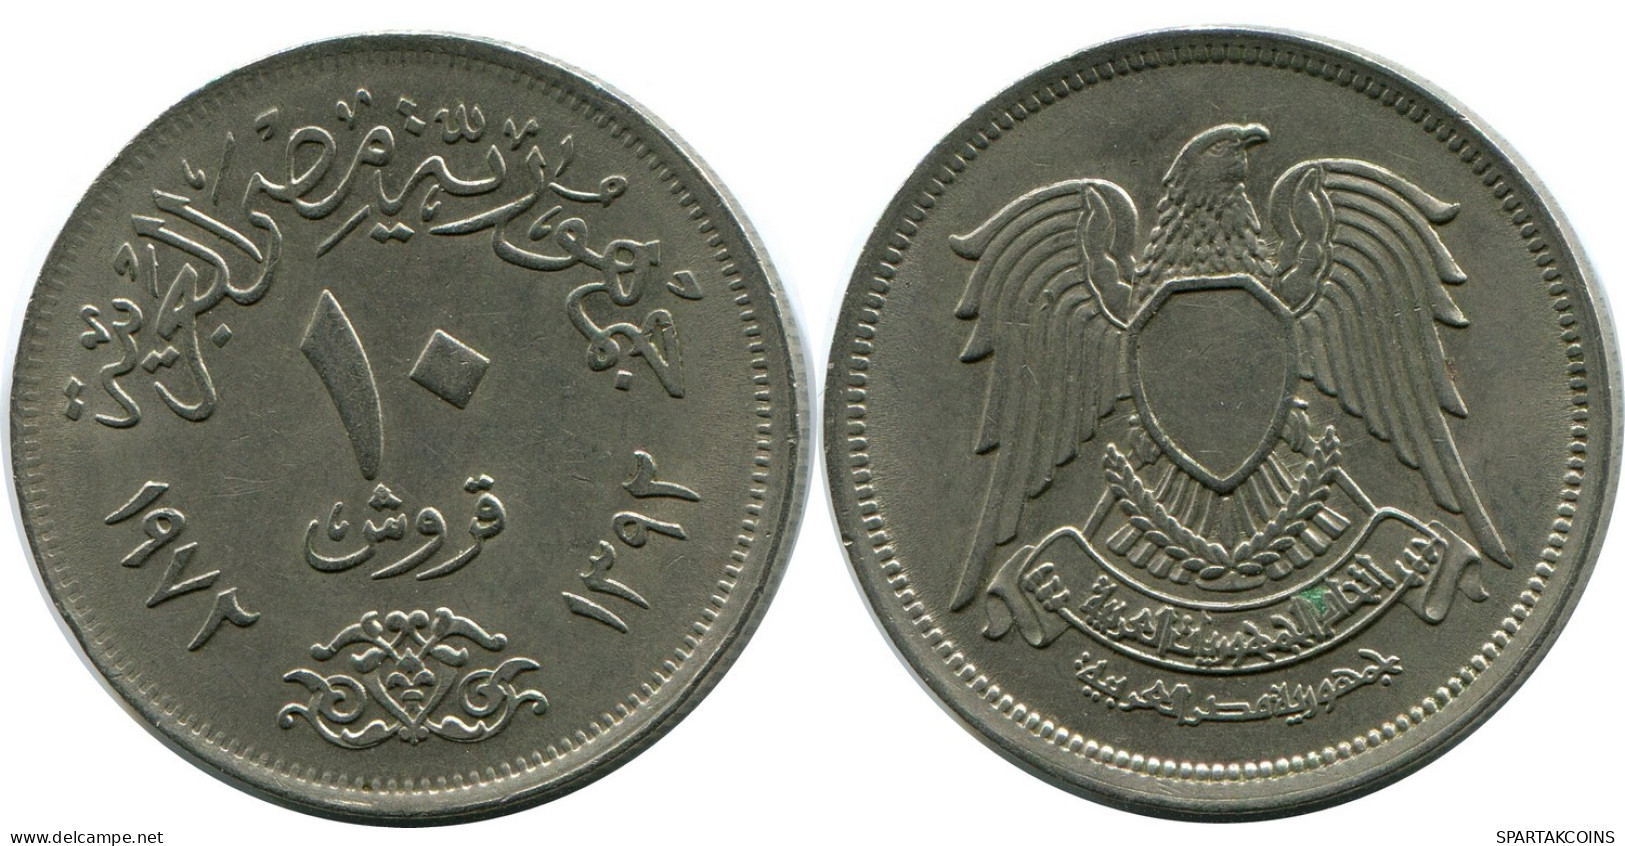 10 QIRSH 1972 ÄGYPTEN EGYPT Islamisch Münze #AP989.D.A - Egypt